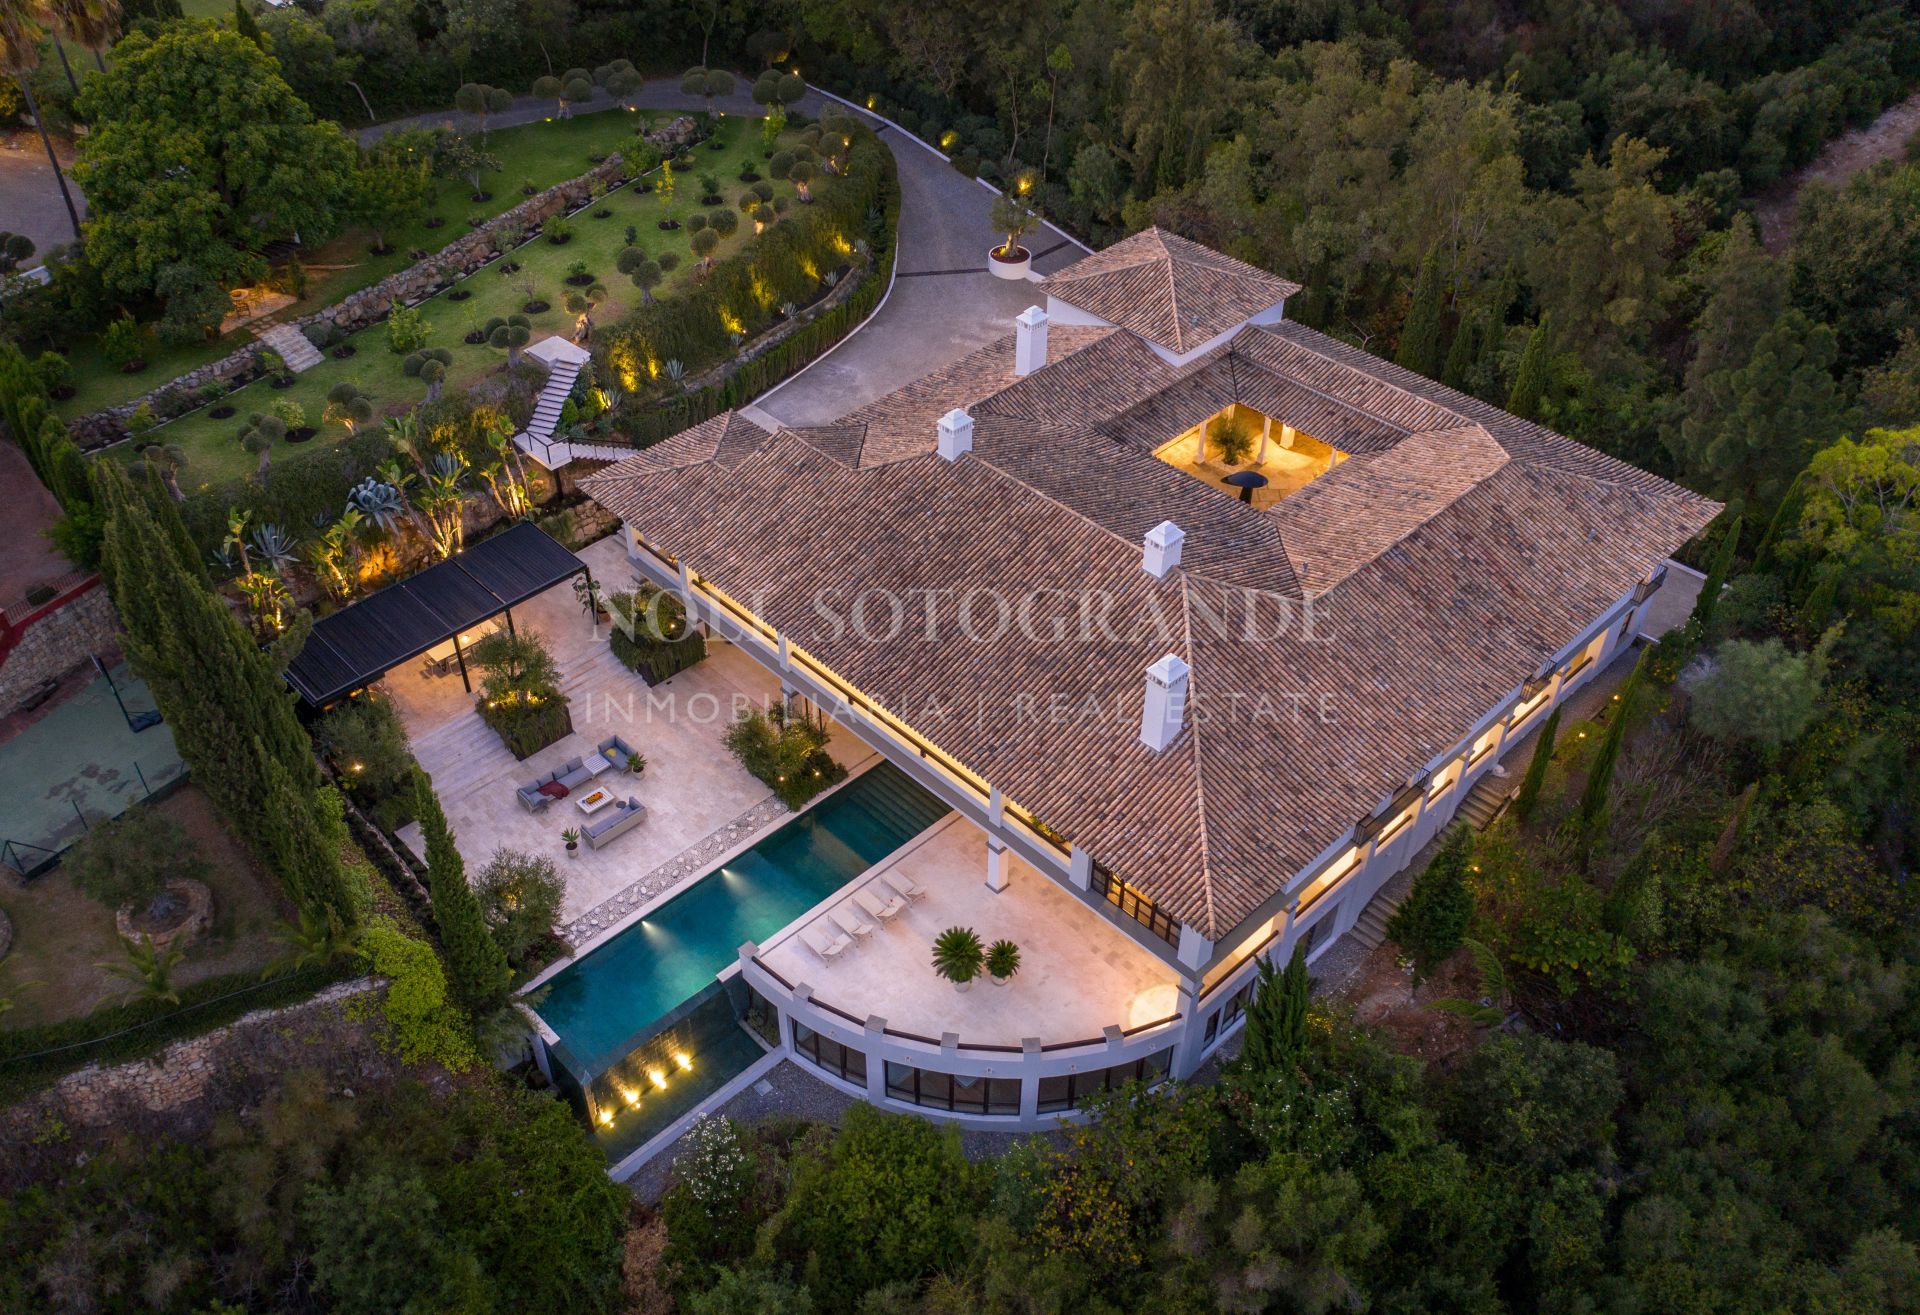 Casa Agosto Sotogrande, Luxury Villa for sale